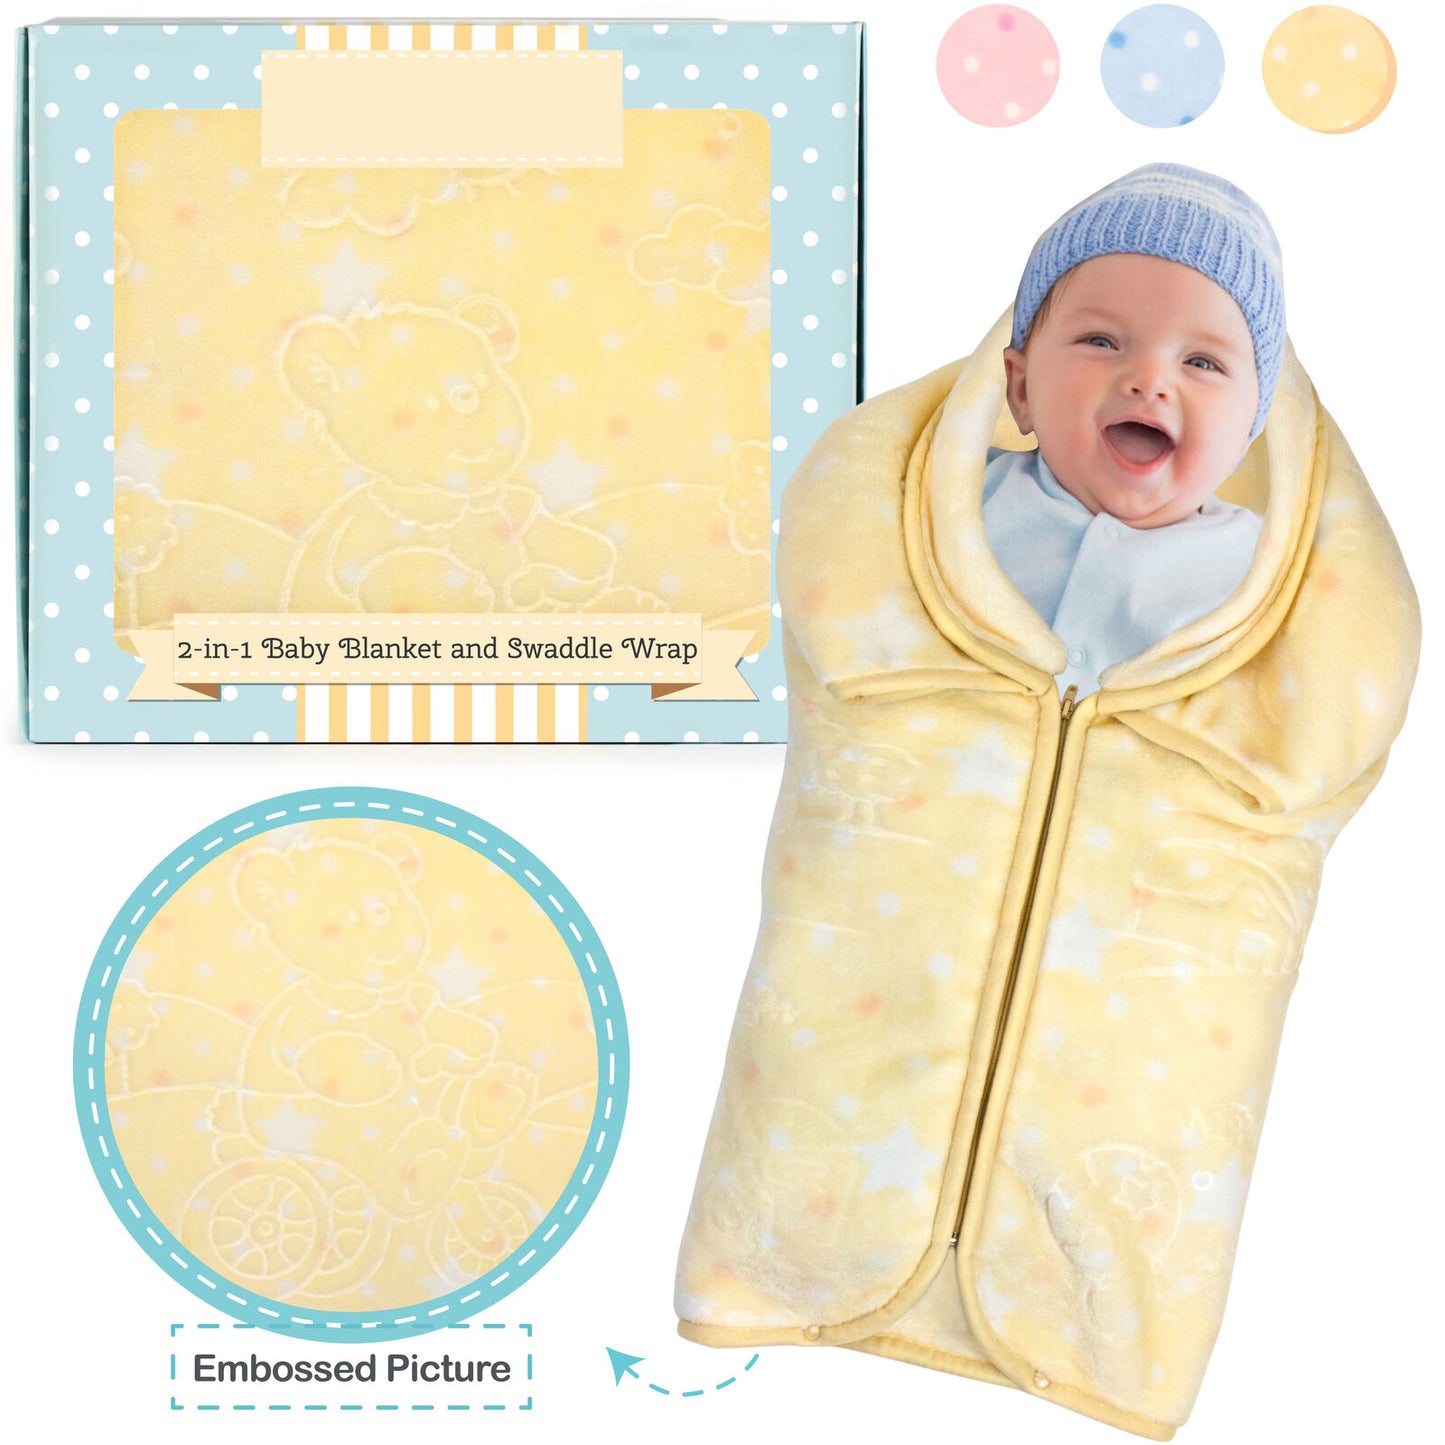 Baby Swaddle Wrap Baby Sleeping Bag Sack Infant Fleece Blanket 2 IN 1 Adjustable